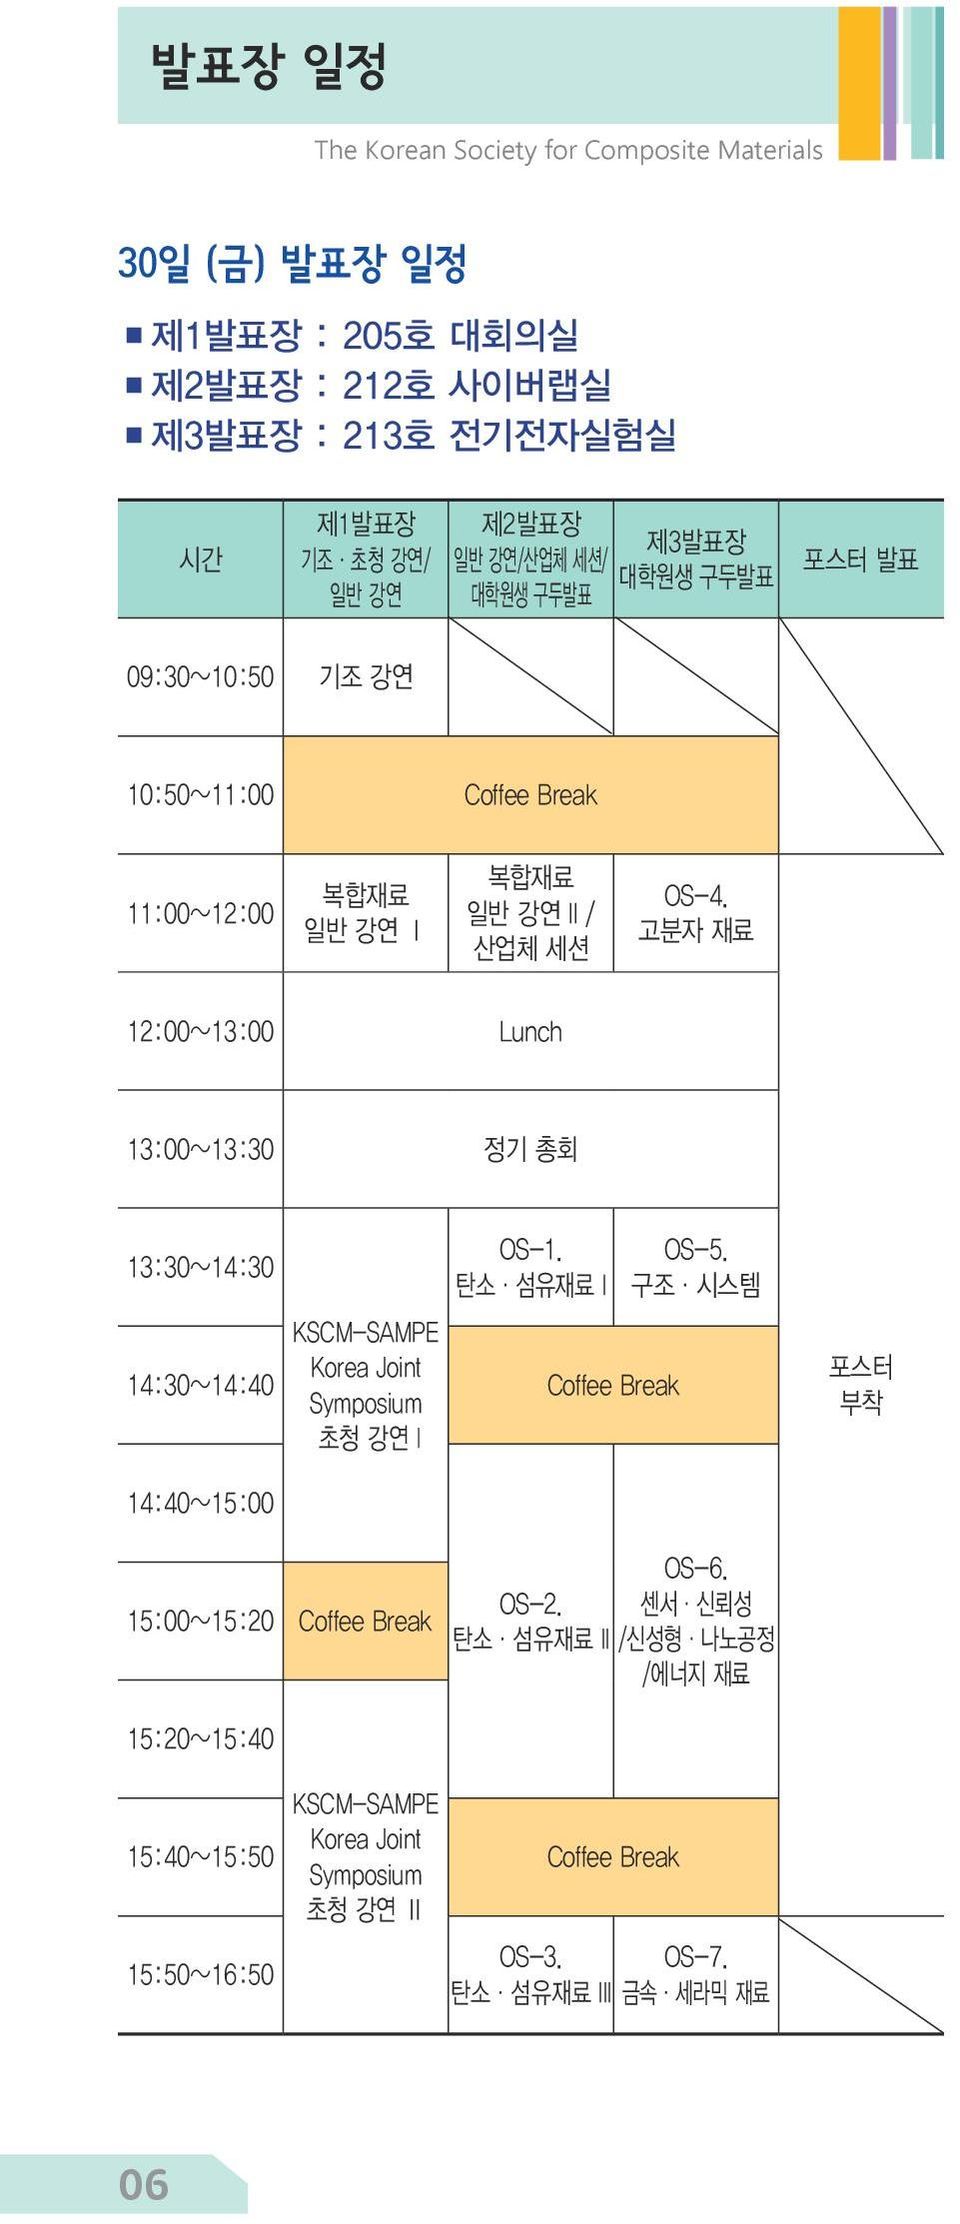 고분자 재료 12:00~13:00 Lunch 13:00~13:30 정기 총회 13:30~14:30 OS-1. 탄소 섬유재료 I KSCM-SAMPE 14:30~14:40 Korea Joint Symposium Coffee Break 초청 강연 I OS-5.